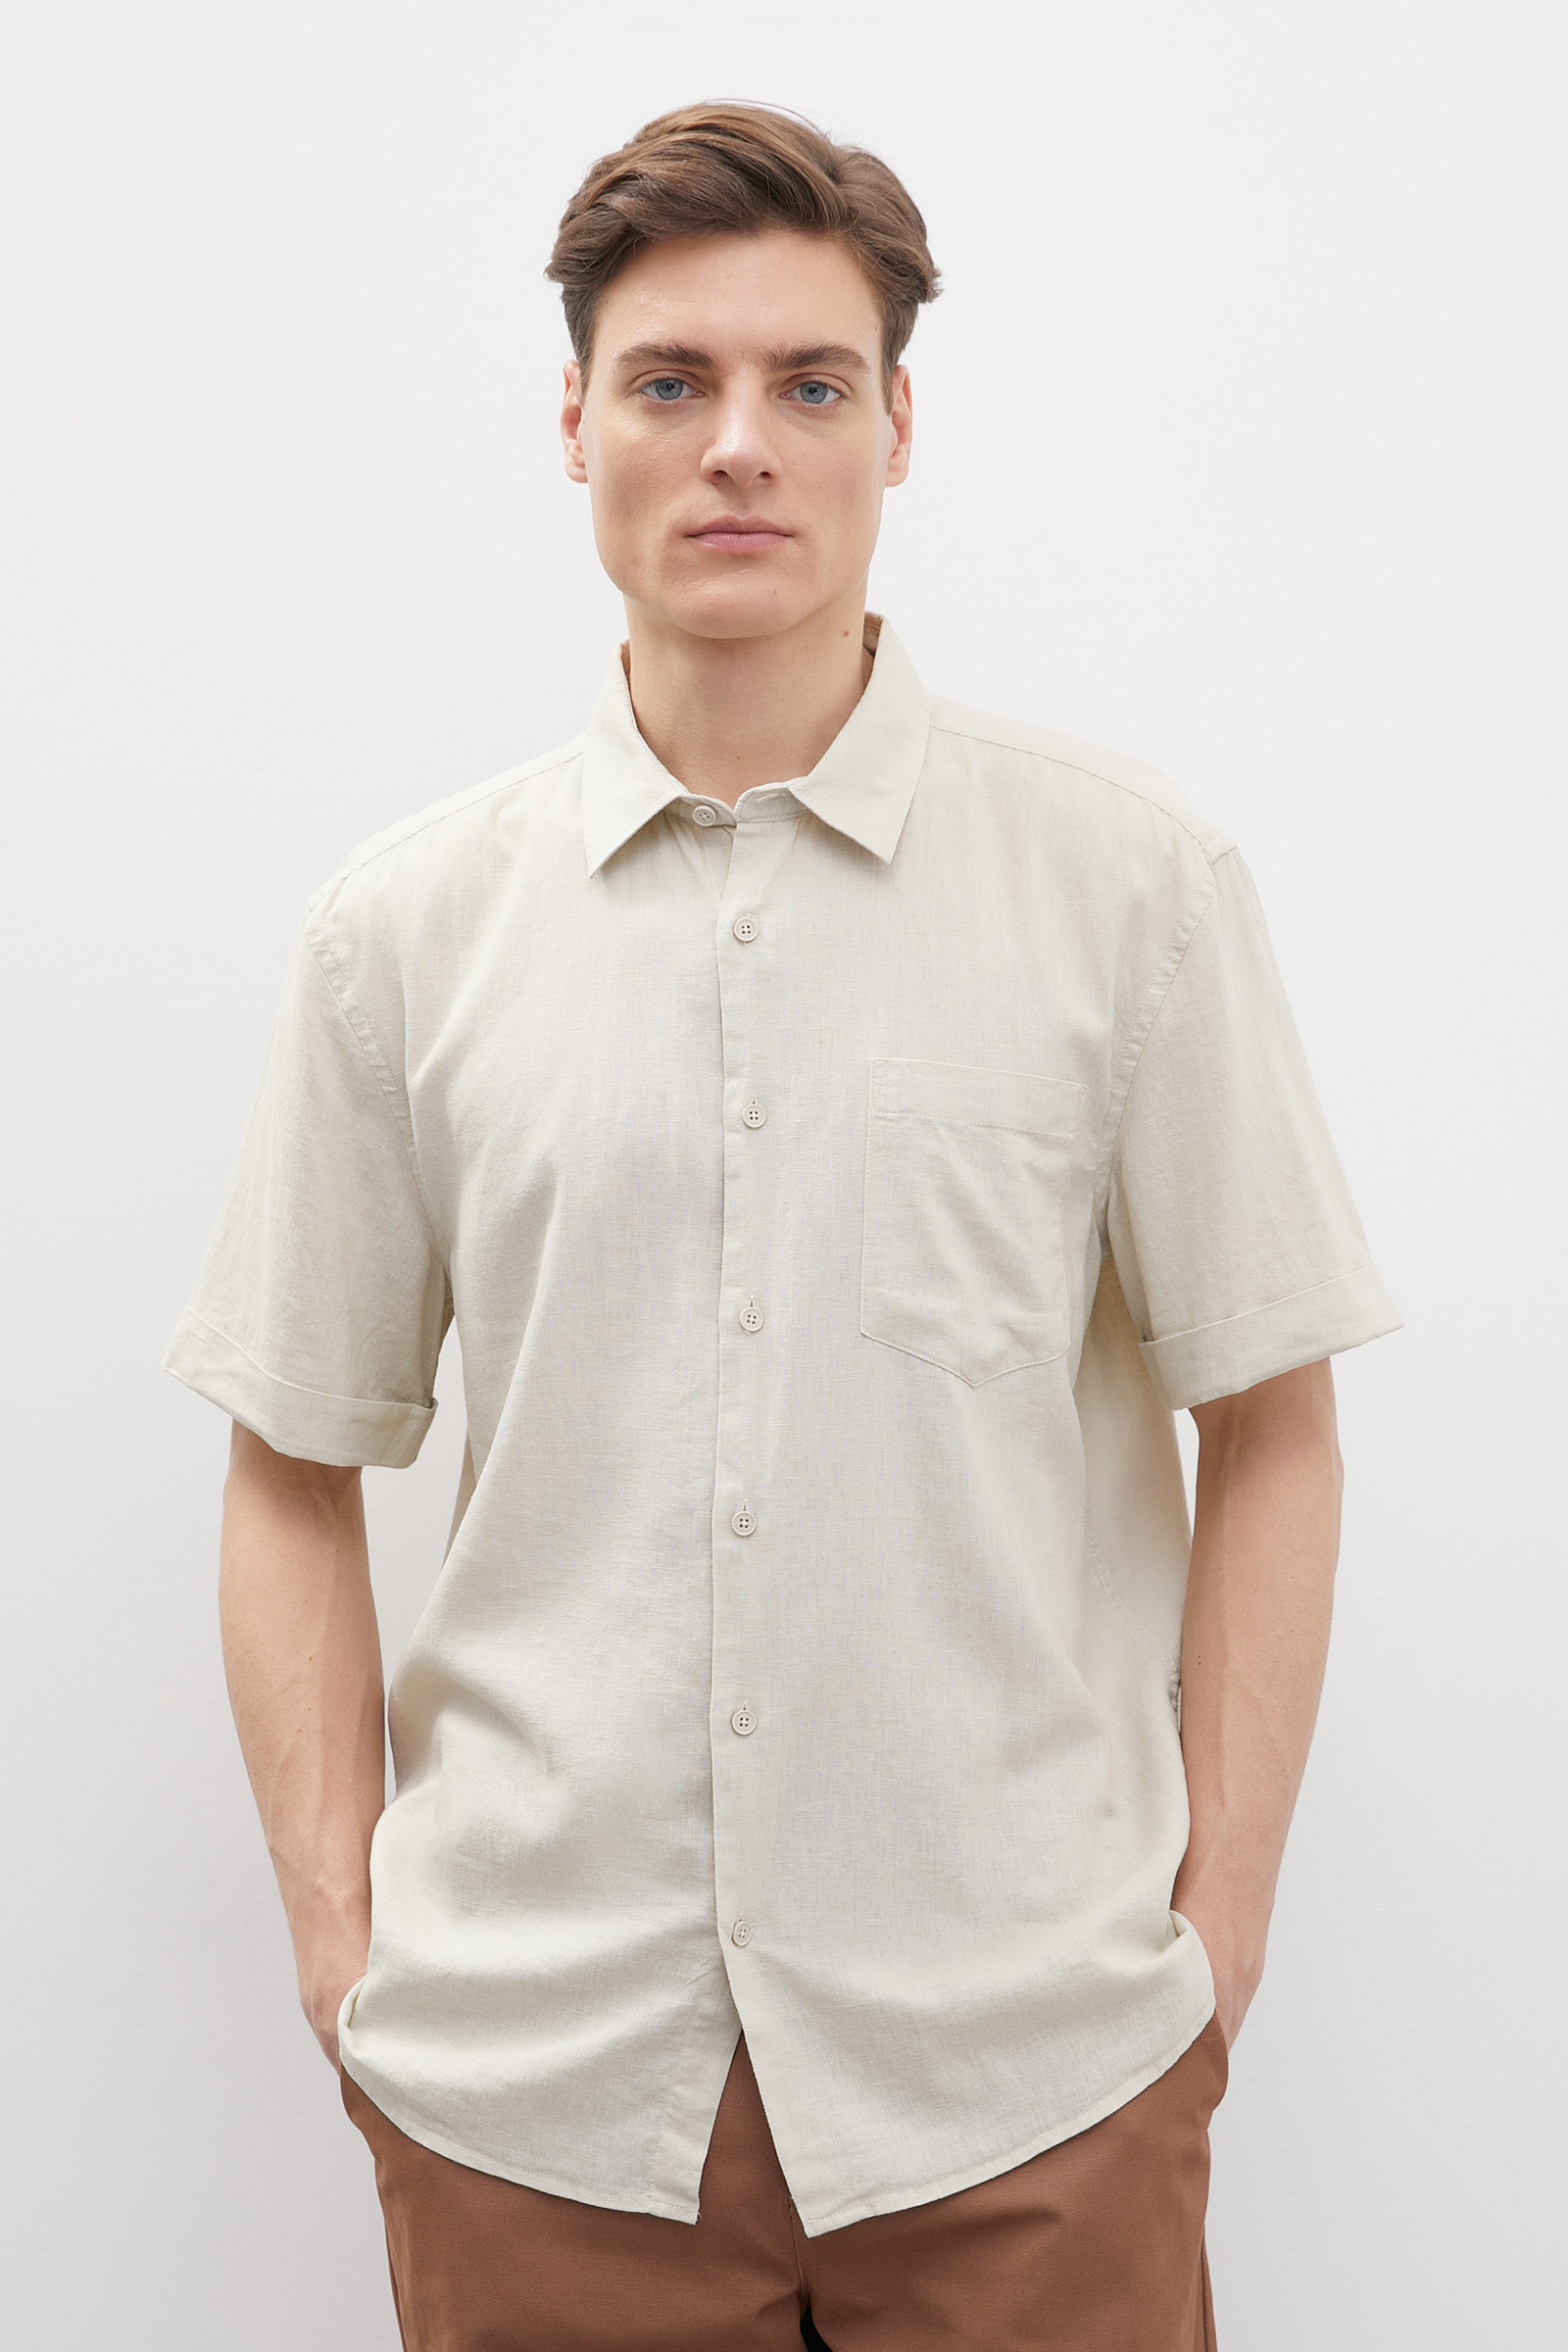 Рубашка мужская Finn Flare FSD21004 белая 2XL